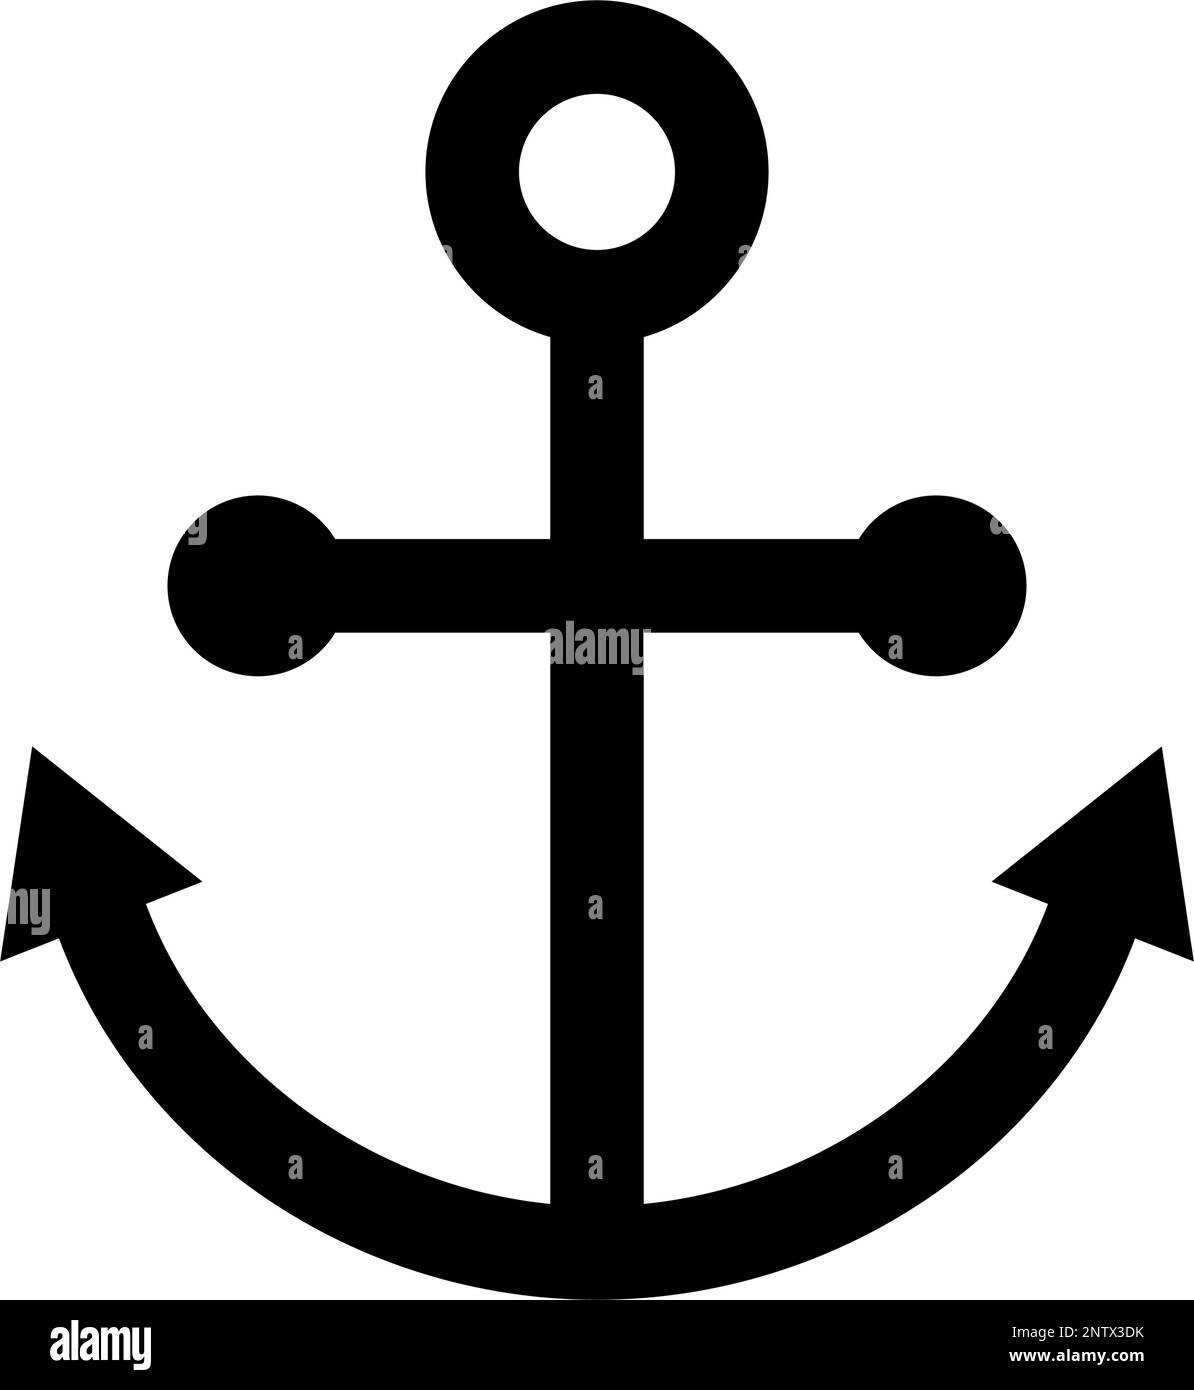 Ship's anchor. Anchor silhouette icon. Editable vector. Stock Vector